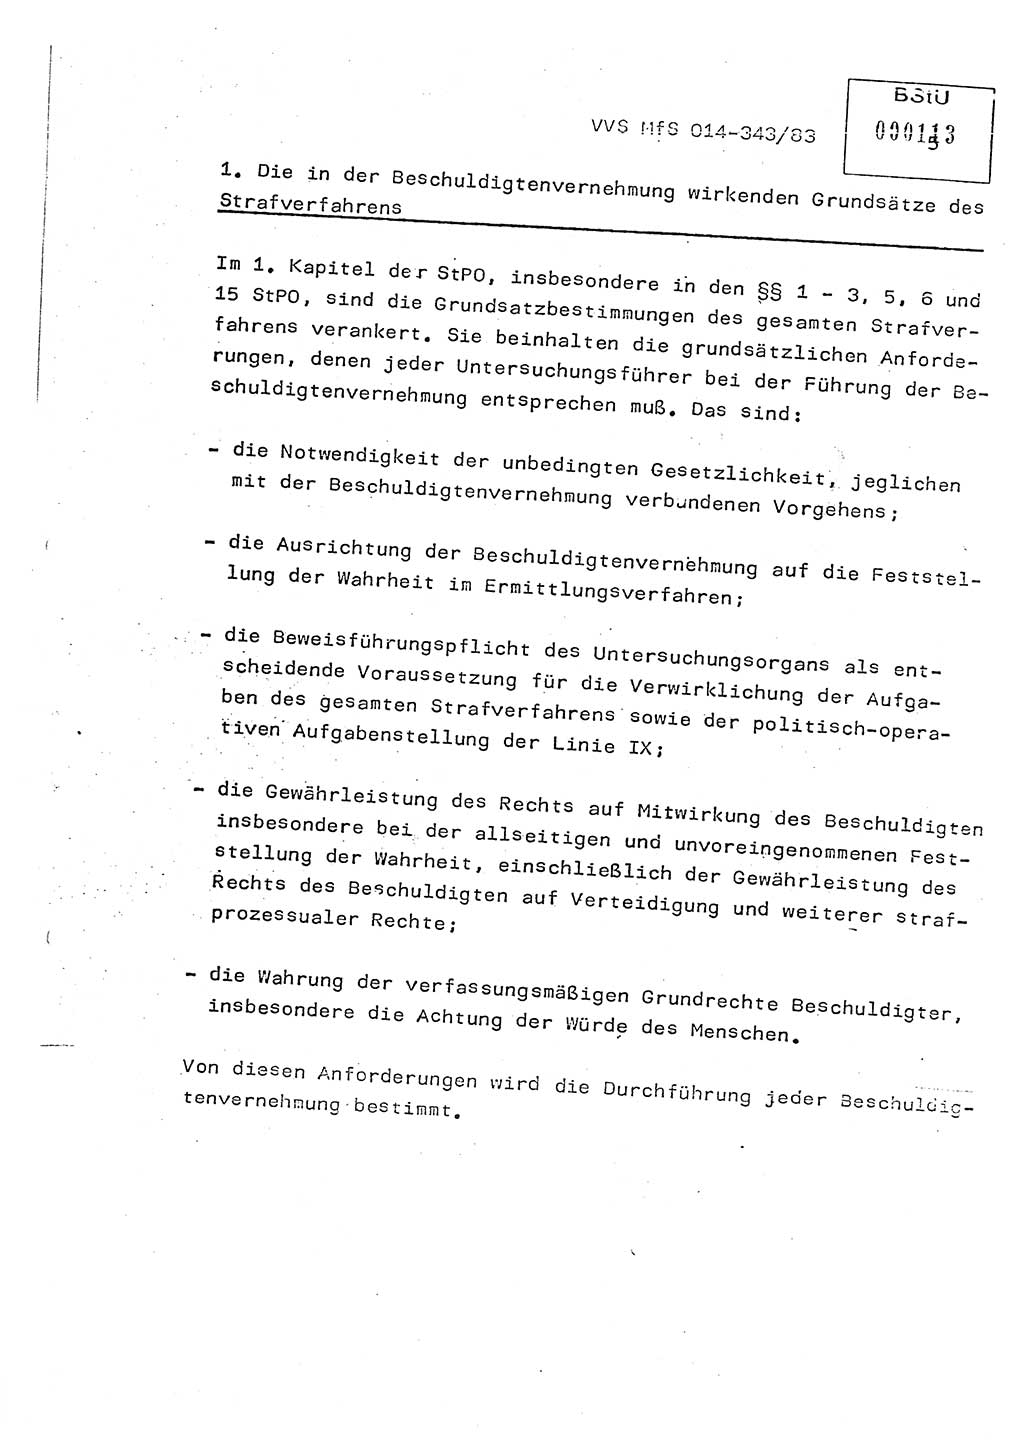 Lektion Ministerium fÃ¼r Staatssicherheit (MfS) [Deutsche Demokratische Republik (DDR)], Hauptabteilung (HA) â…¨, Vertrauliche VerschluÃŸsache (VVS) o014-343/83, Berlin 1983, Seite 5 (Lekt. MfS DDR HA â…¨ VVS o014-343/83 1983, S. 5)